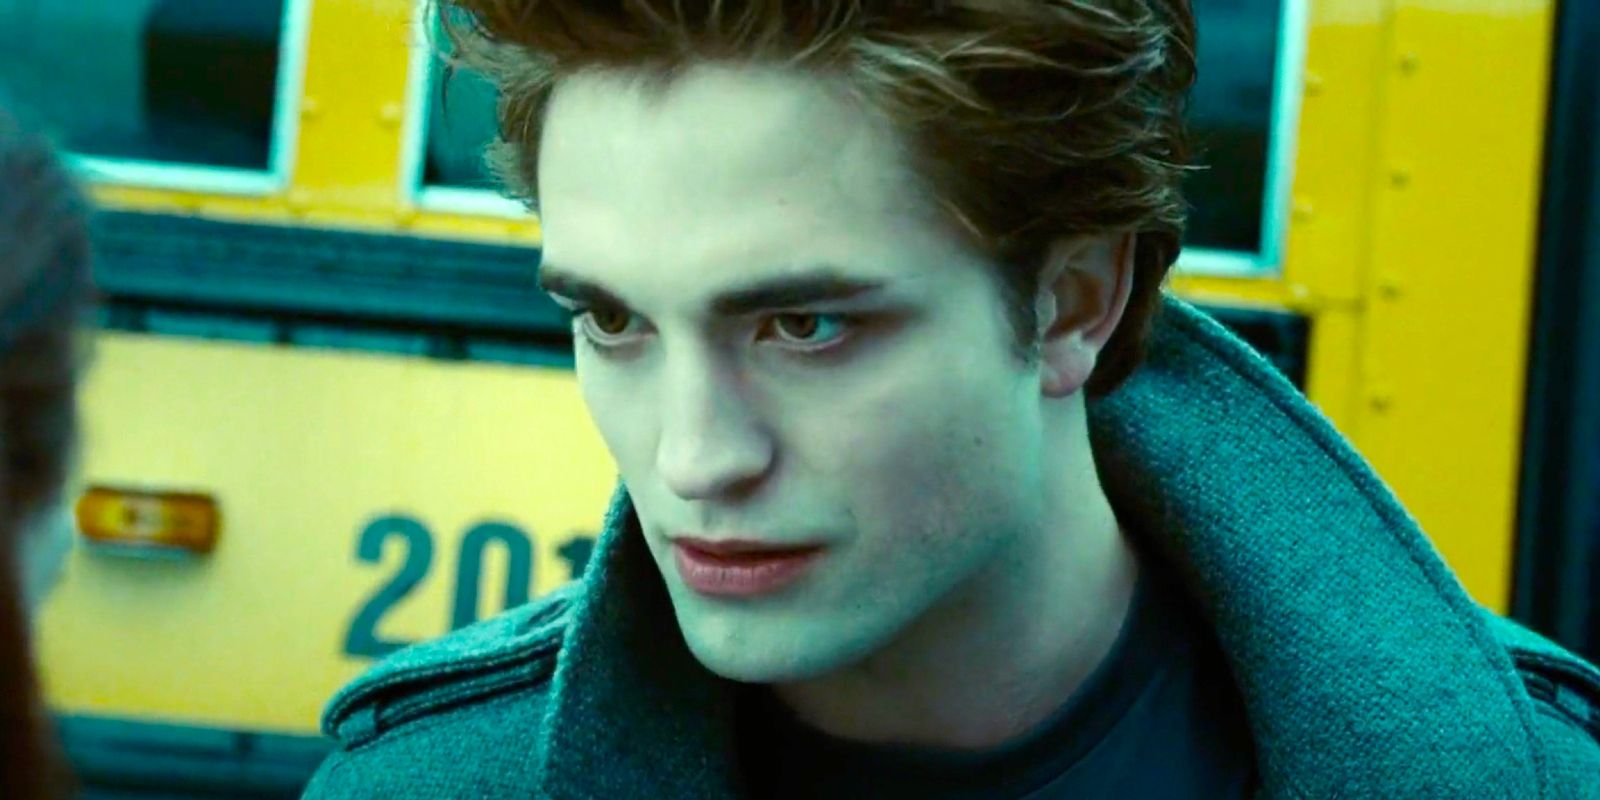 Edward talking in Twilight in front of a school bus